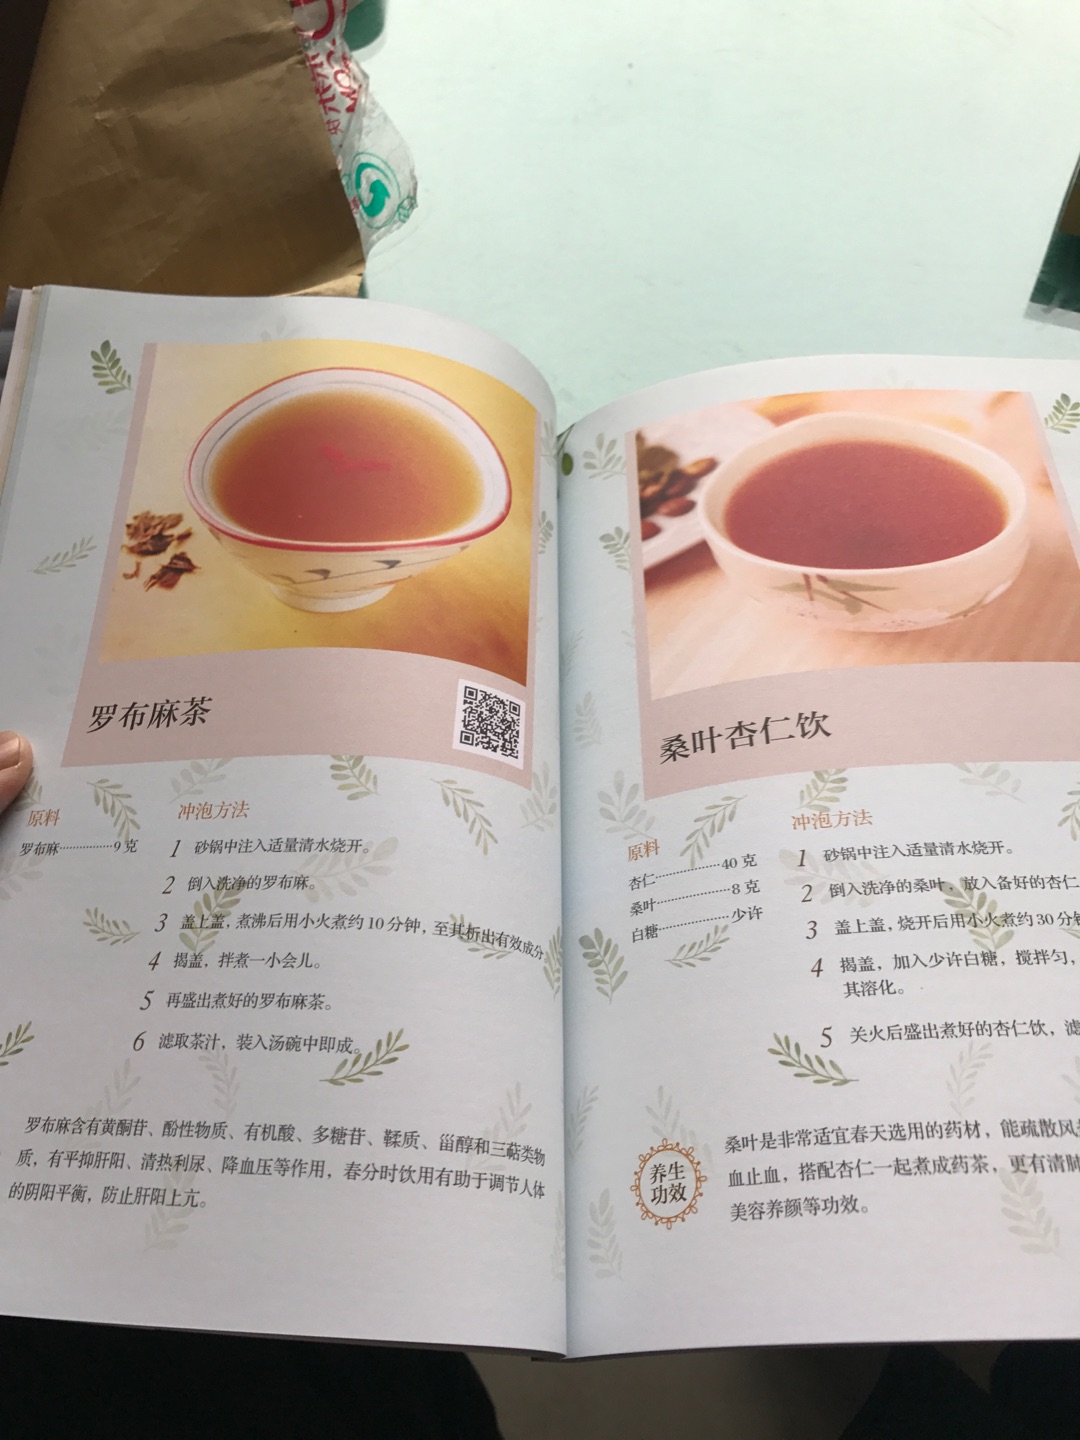 介绍怎么泡茶煮茶，图文并茂，就是书来的时候没有塑封，其他都挺好的